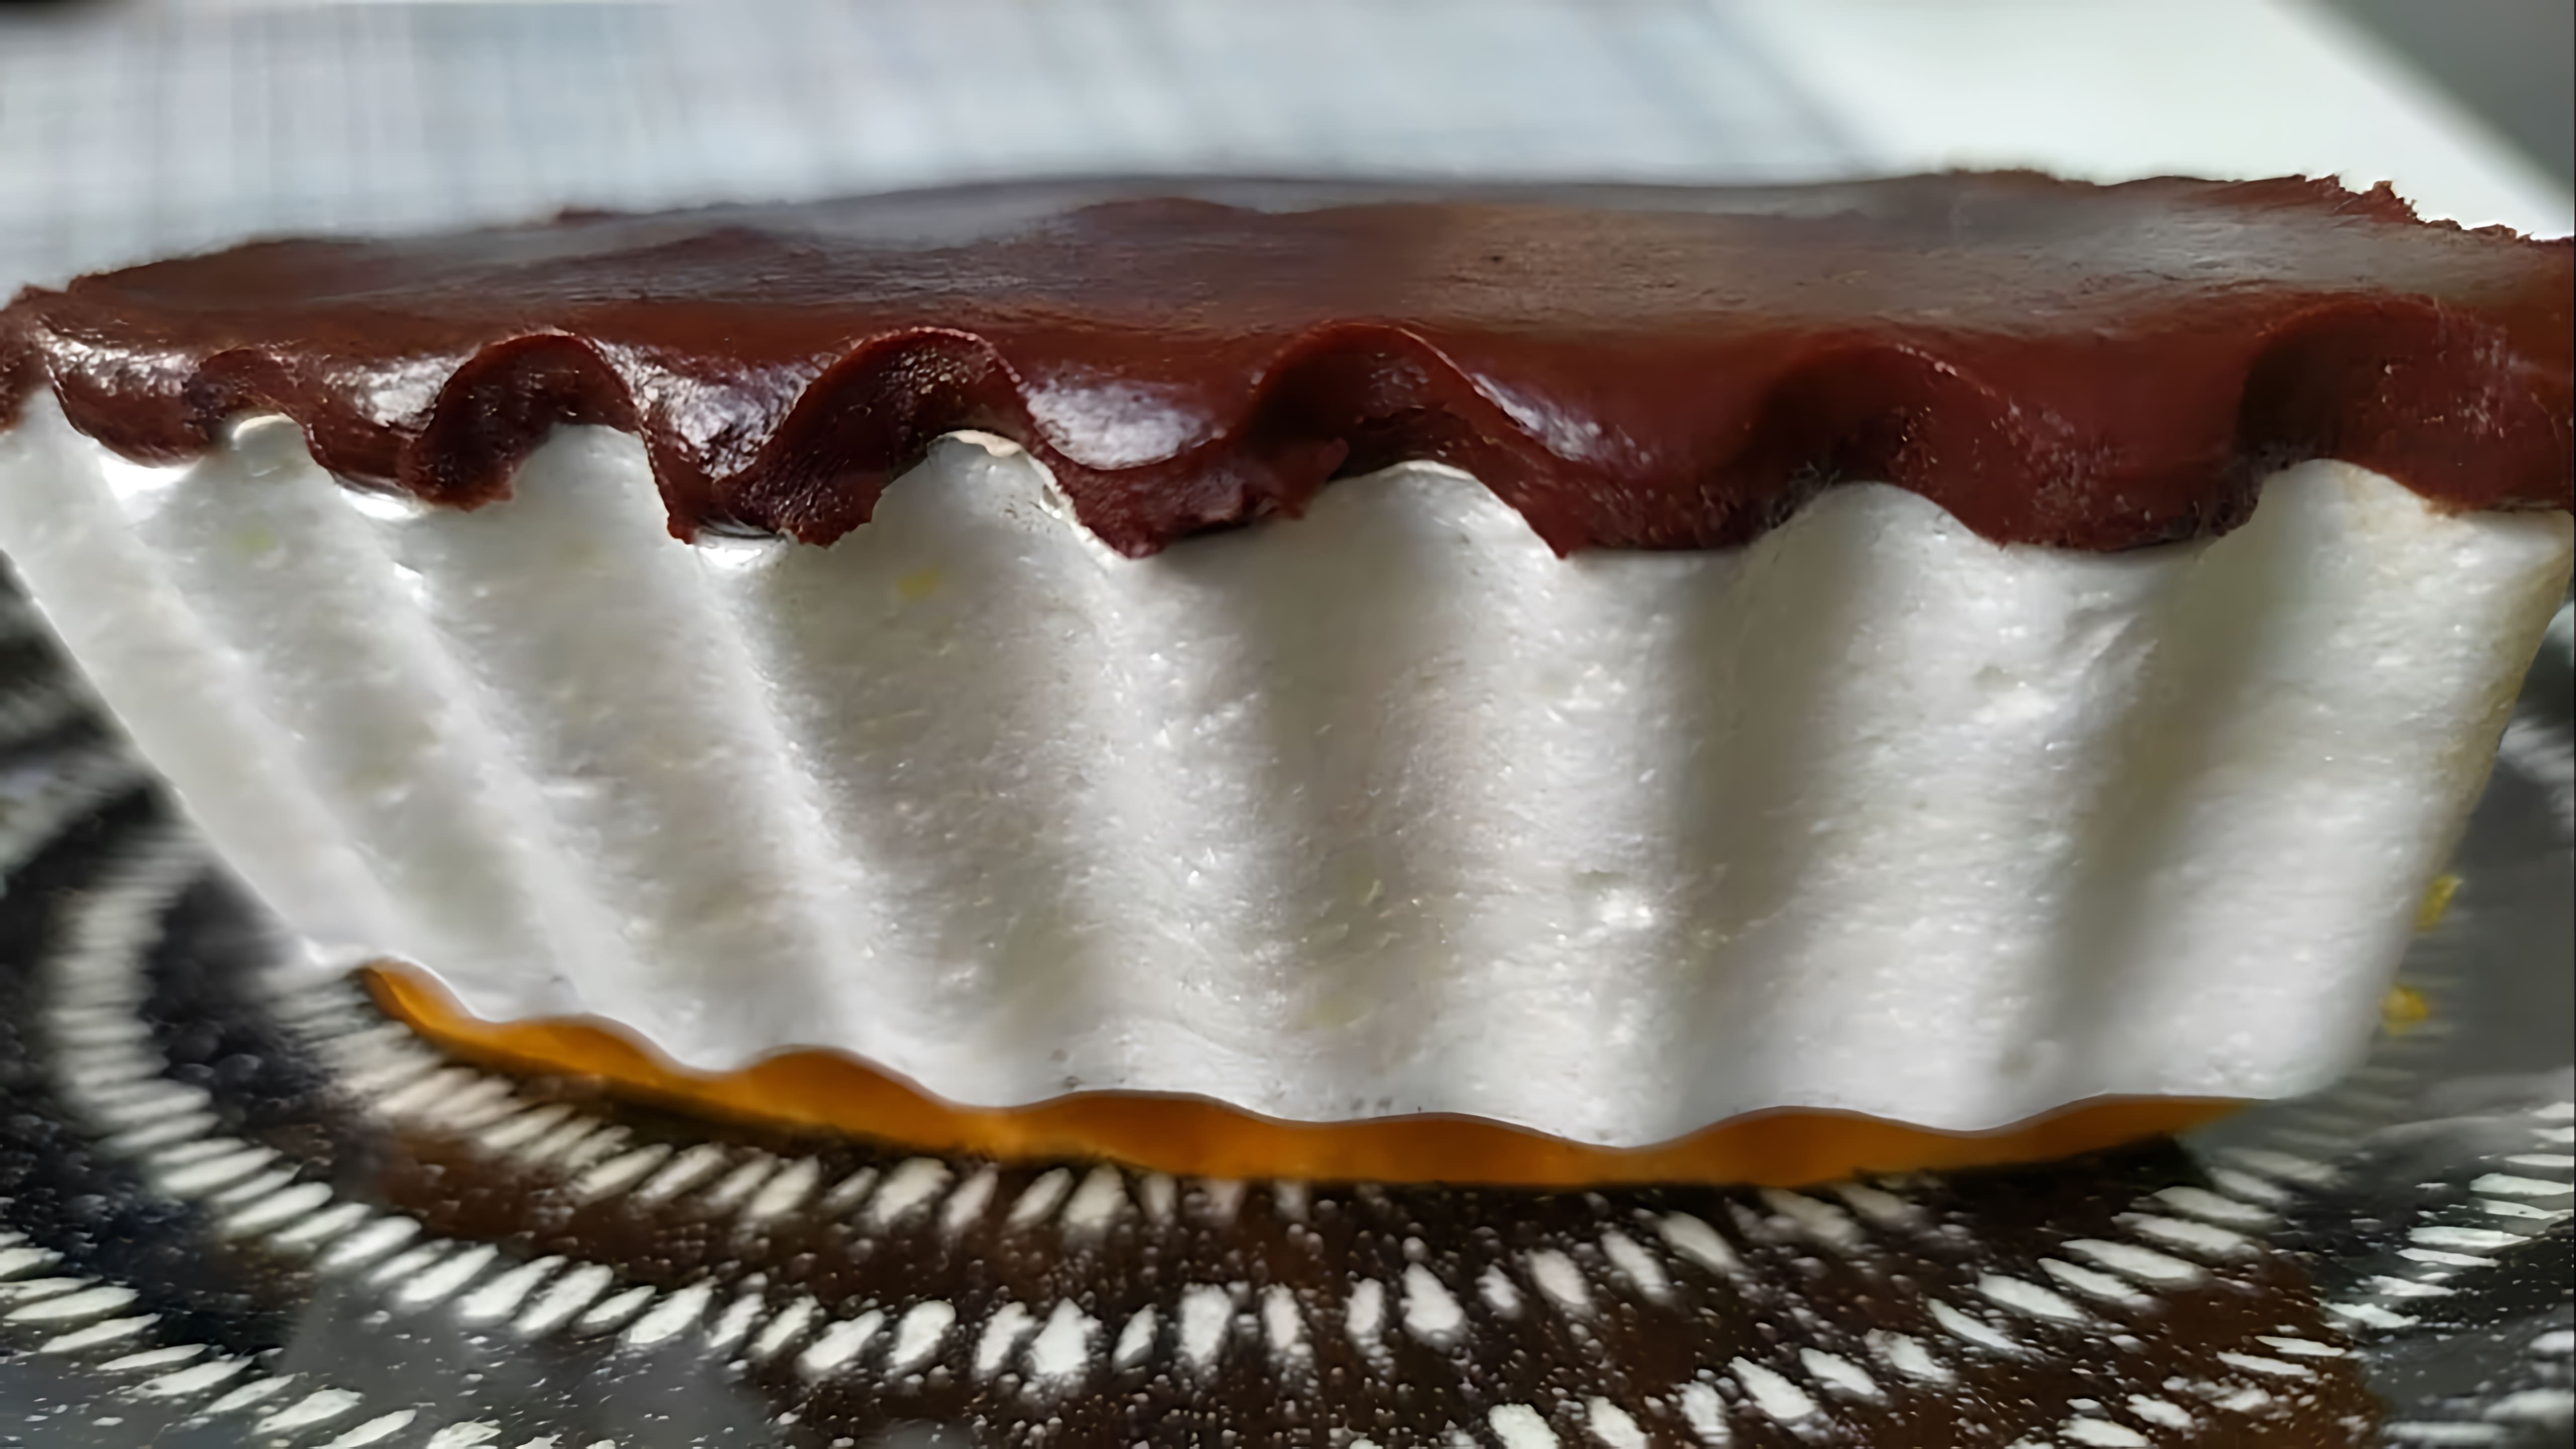 Видео рецепт шоколадной глазури или глазури, которая использует только по 4 столовые ложки сахара, какао-порошка и молока, а также 70 граммов масла